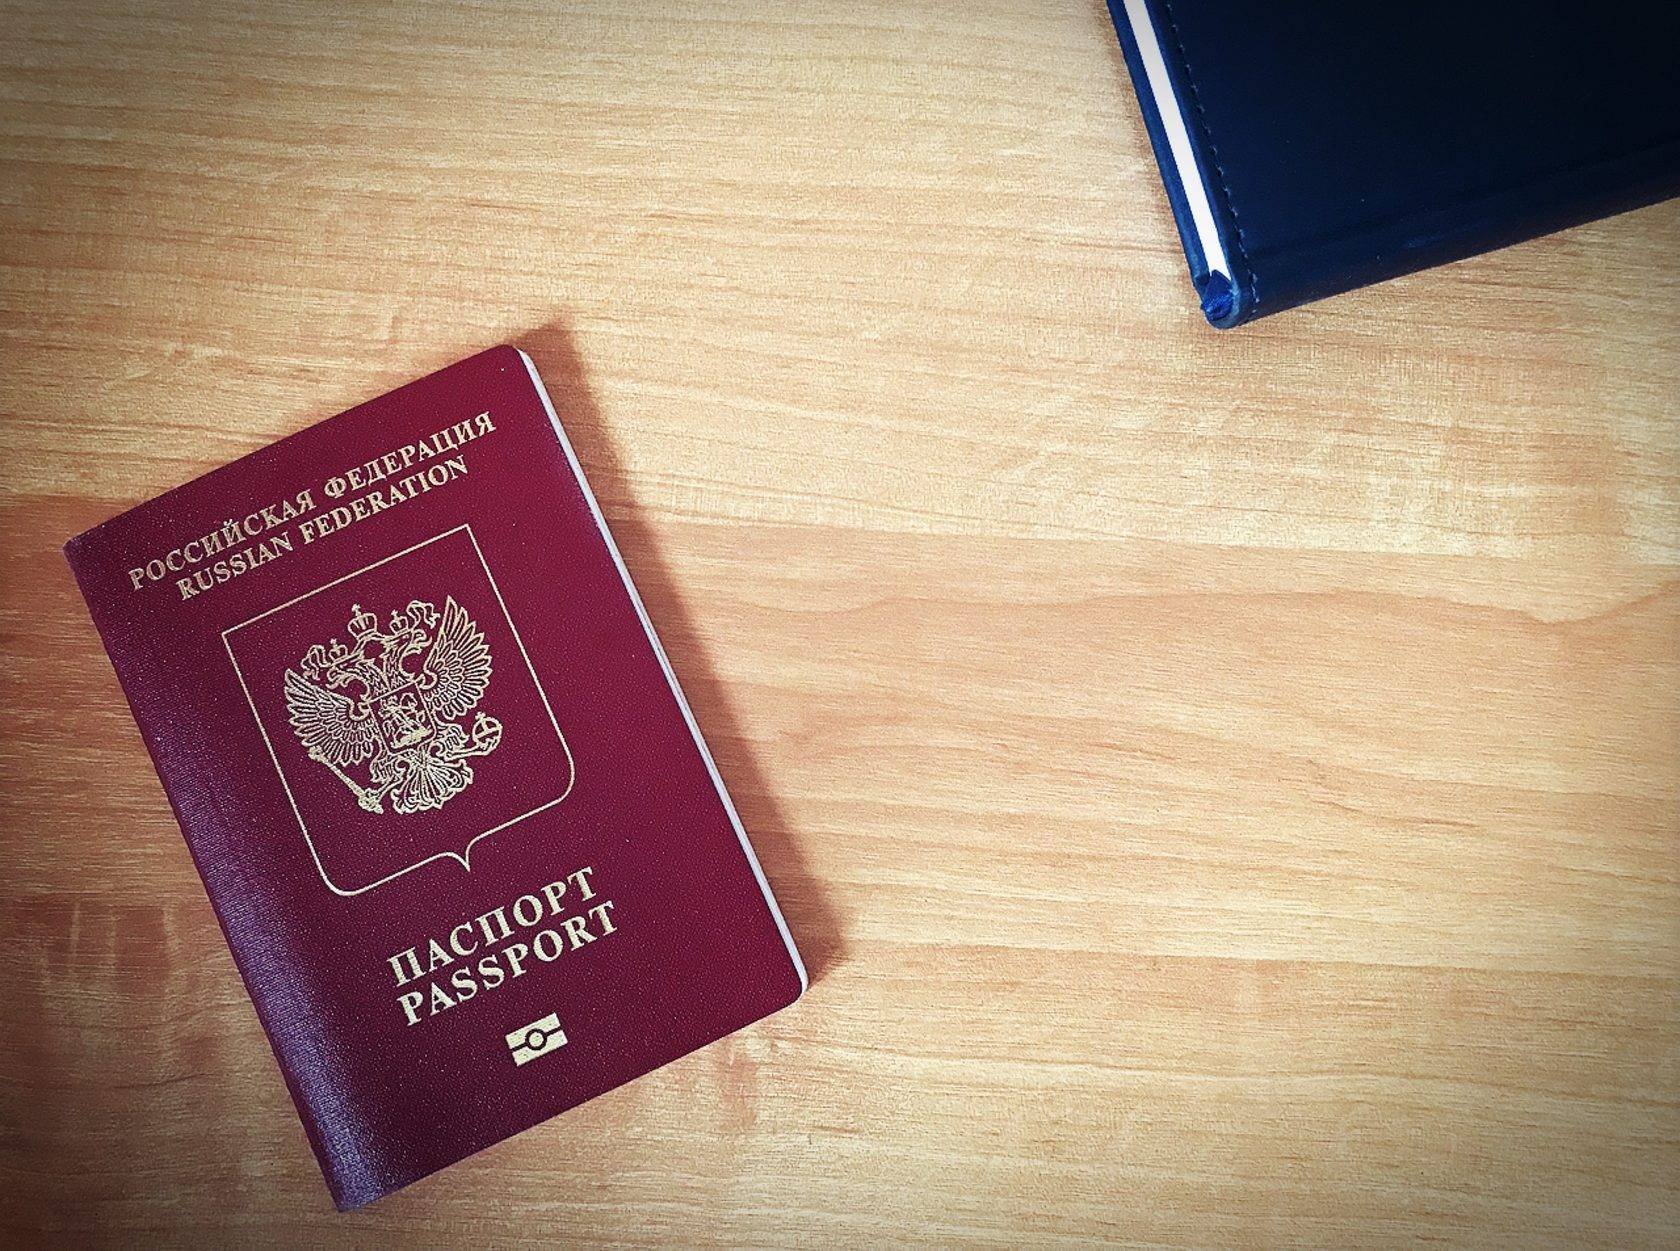 Получение чешского гражданства в 2023 году, требования, стоимость, документы | provizu.ru